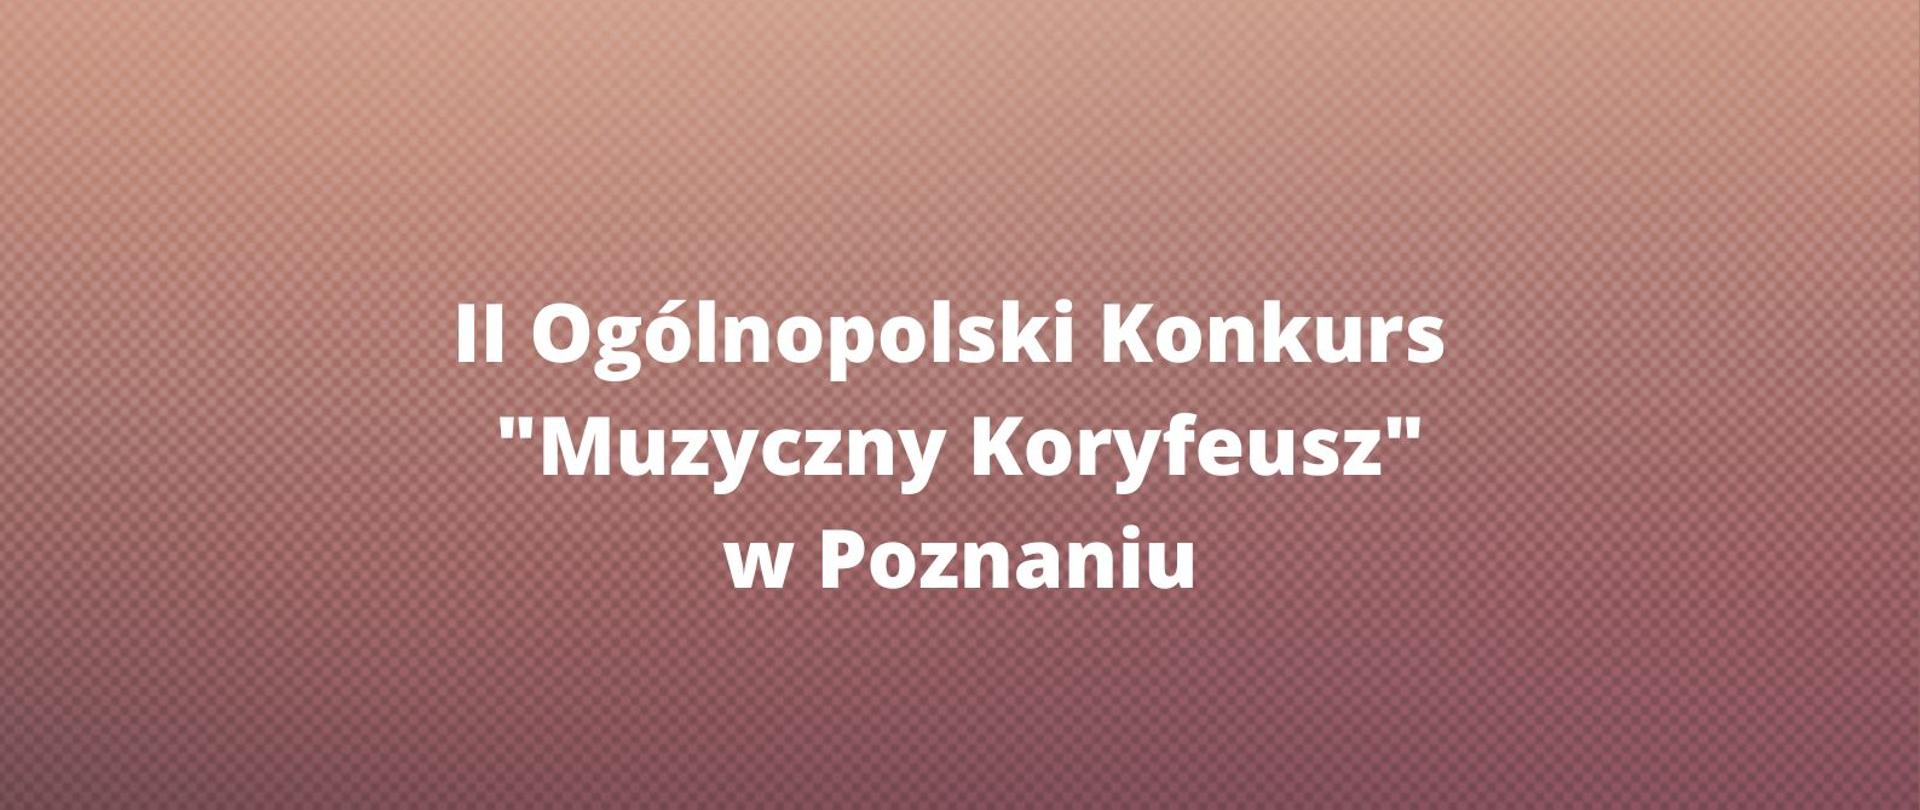 Grafika. Tło jasno i ciemnobrązowe. Napis II ogólnopolski Konkurs "Muzyczny Koryfeusz" w Poznaniu.